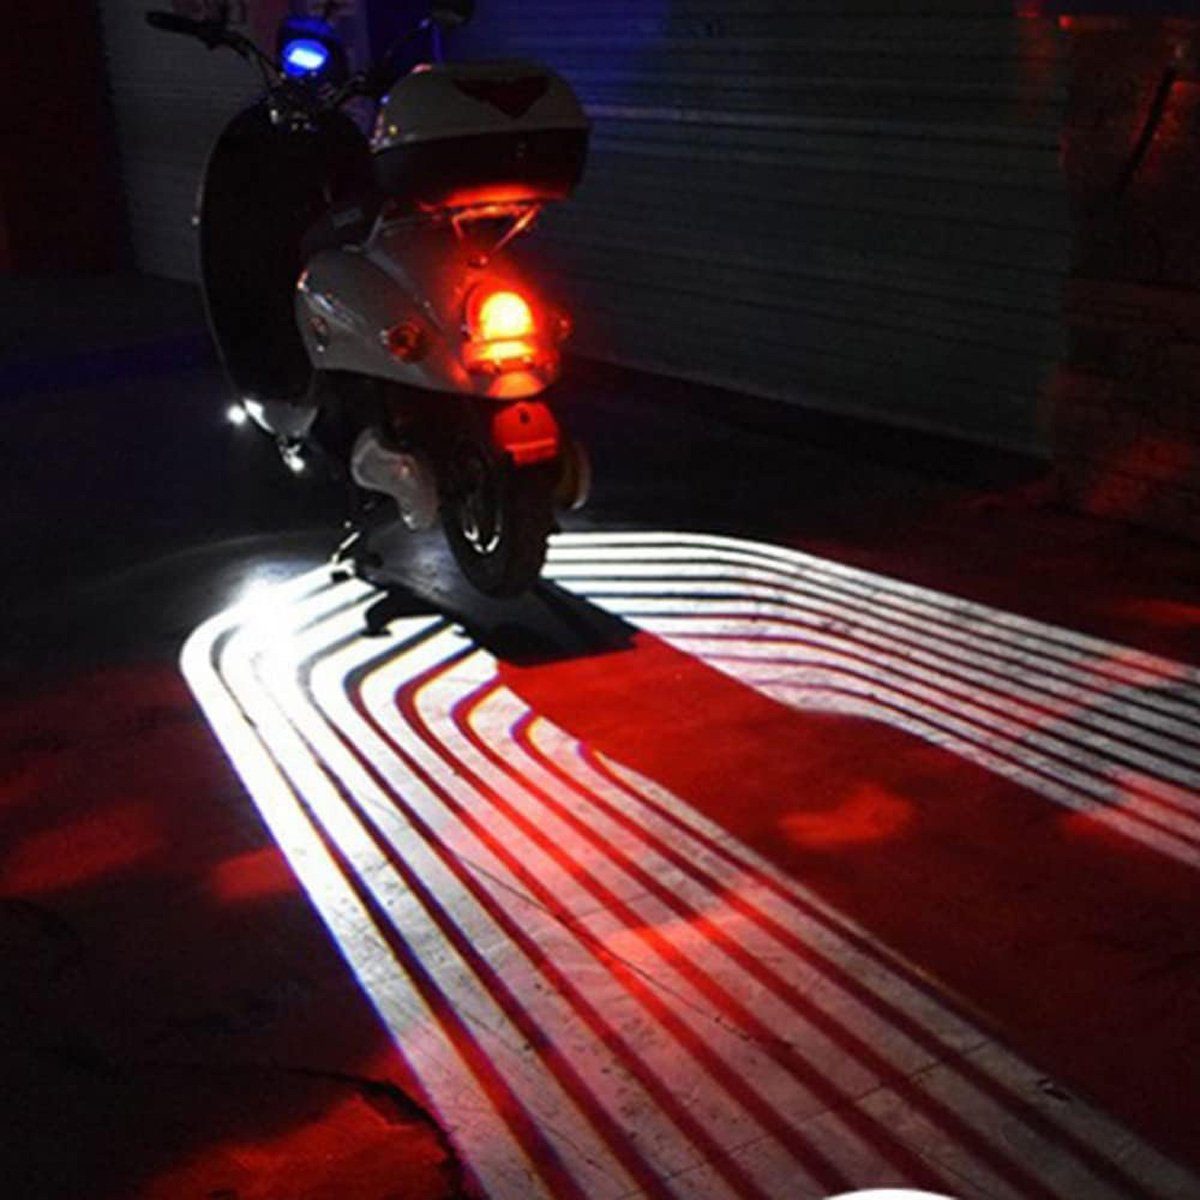 götäzer Motorrad Weiss Engelsflügelprojektion, modifiziertes LED-Lichtsystem Willkommenslicht, -Licht Dekorationszubehör -LED